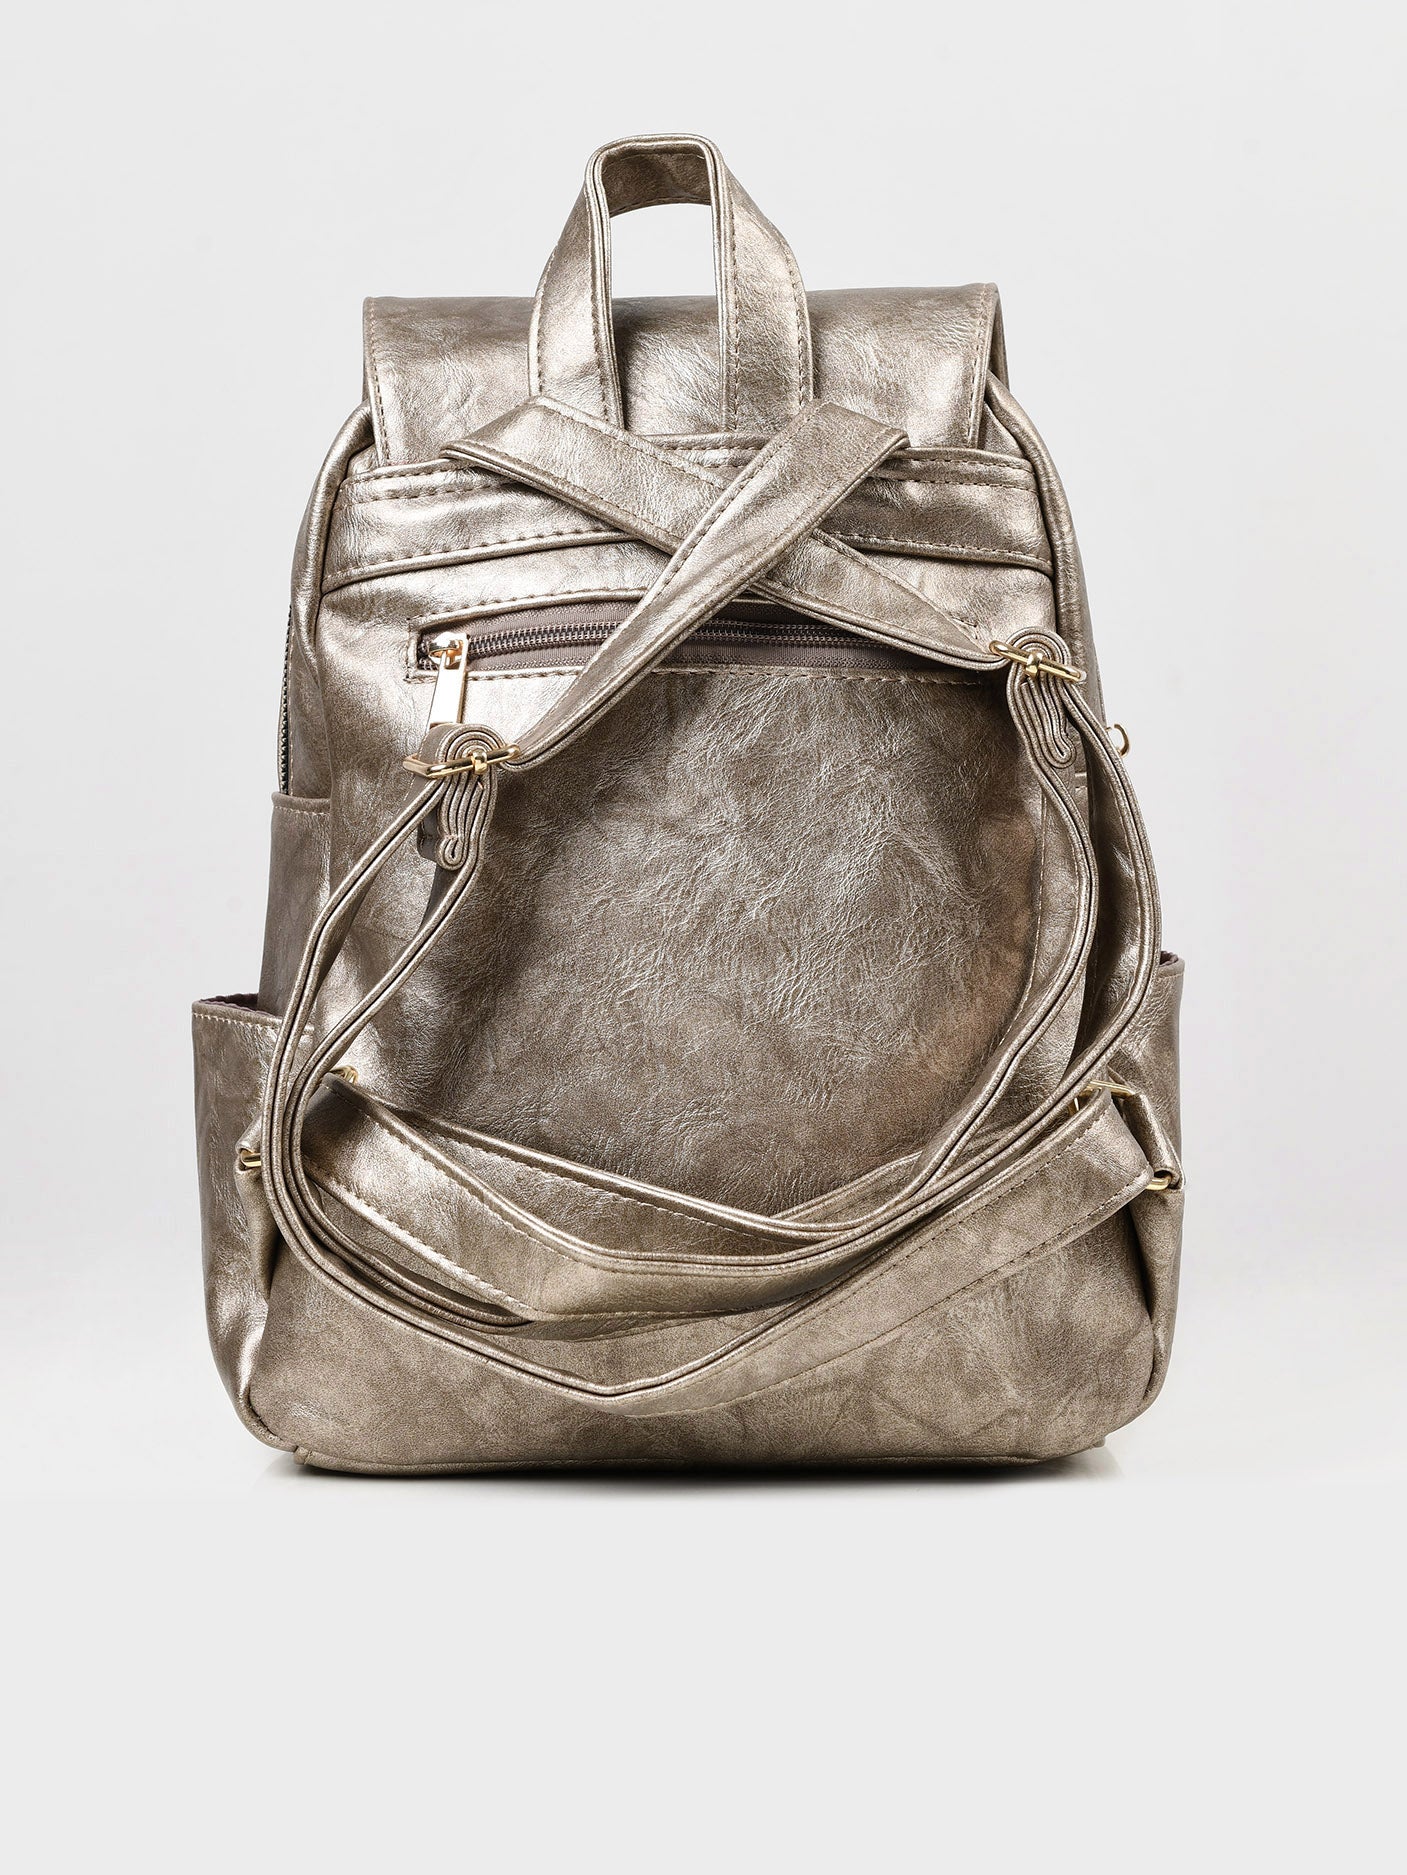 Zipped Backpack